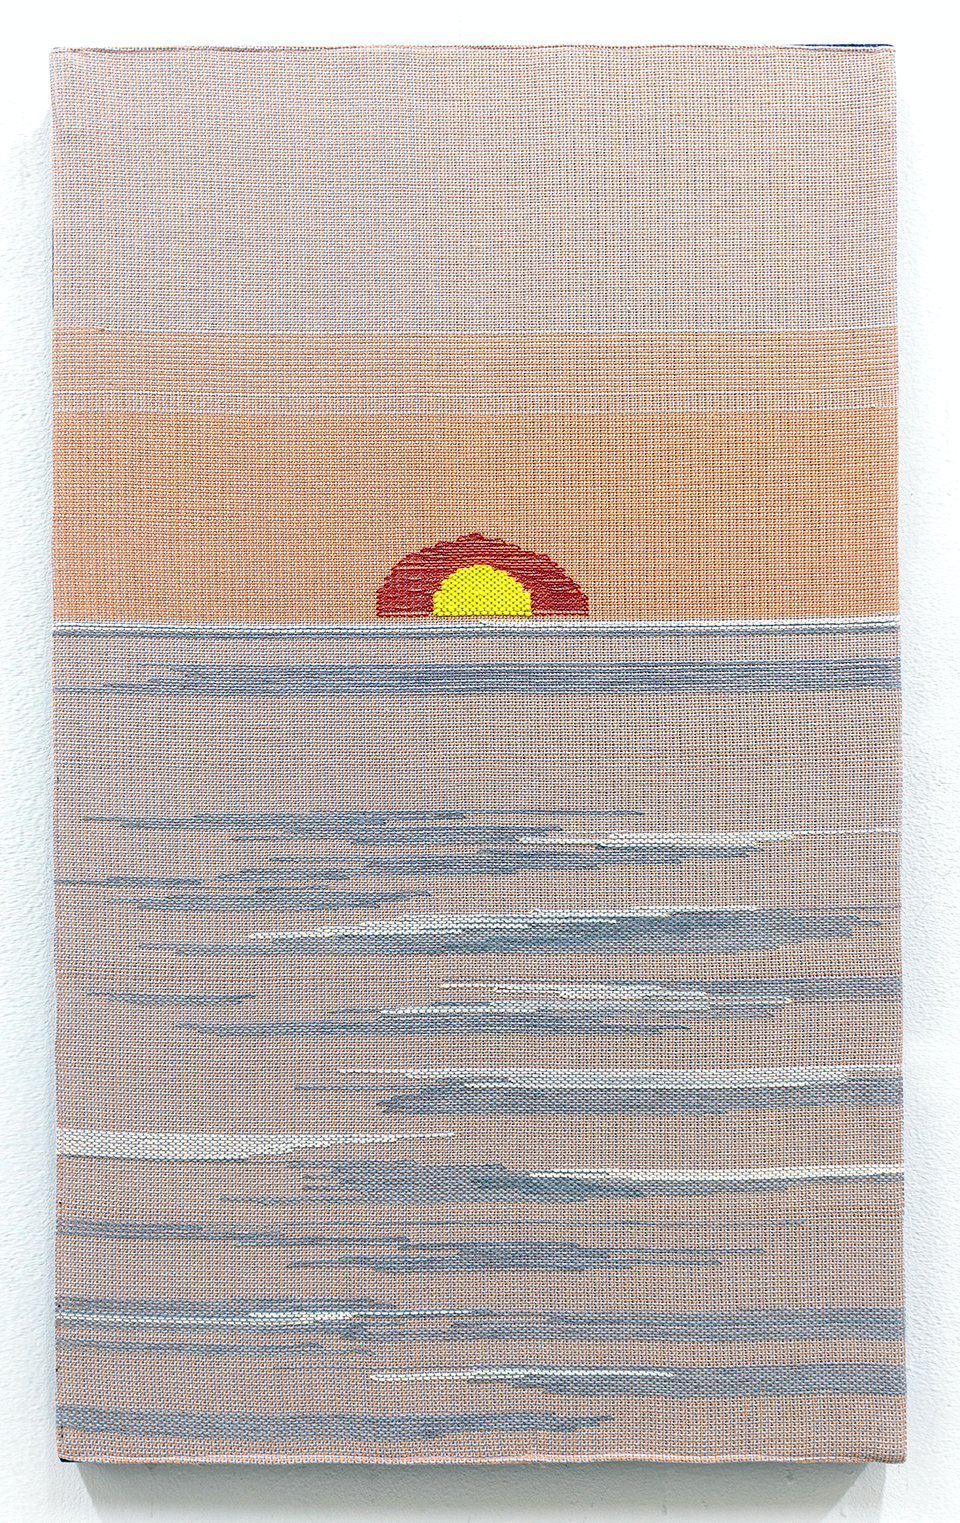 Miranda Fengyuan Zhang, Untilted (Sunrise), 2020